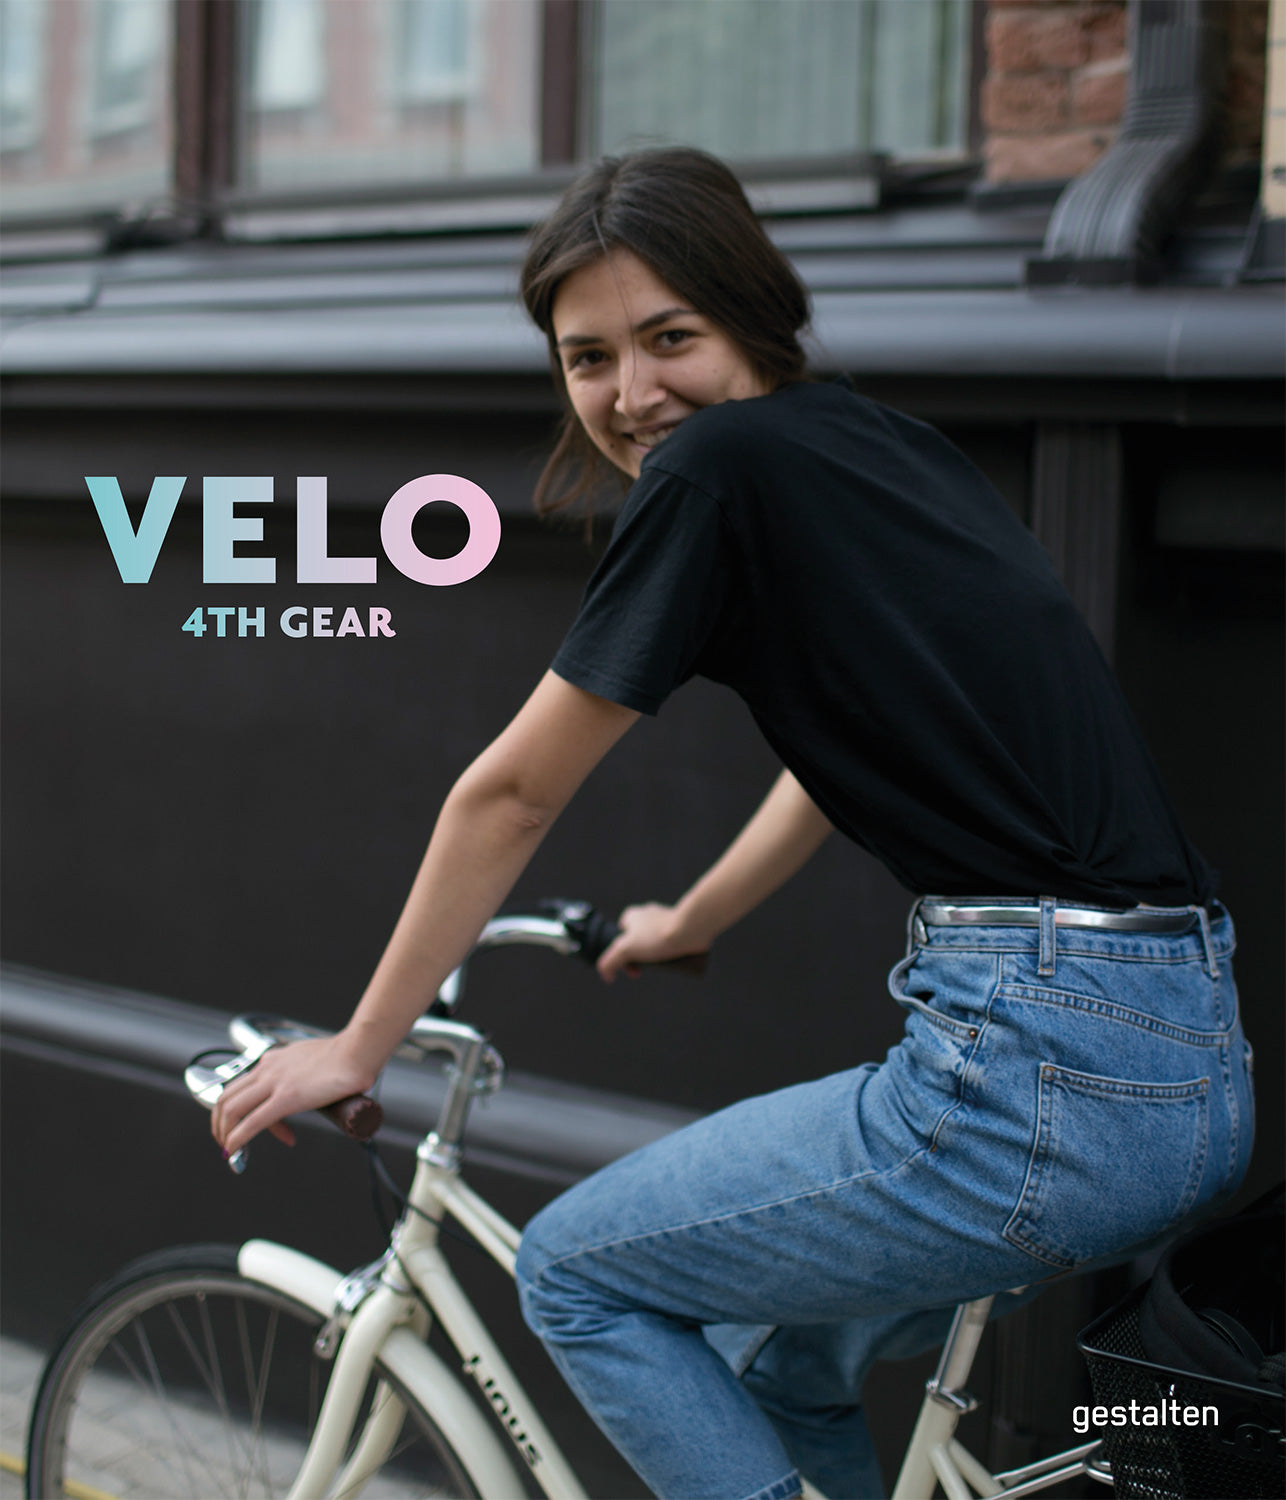 Velo City (announced as Velo: 4th Gear) cover